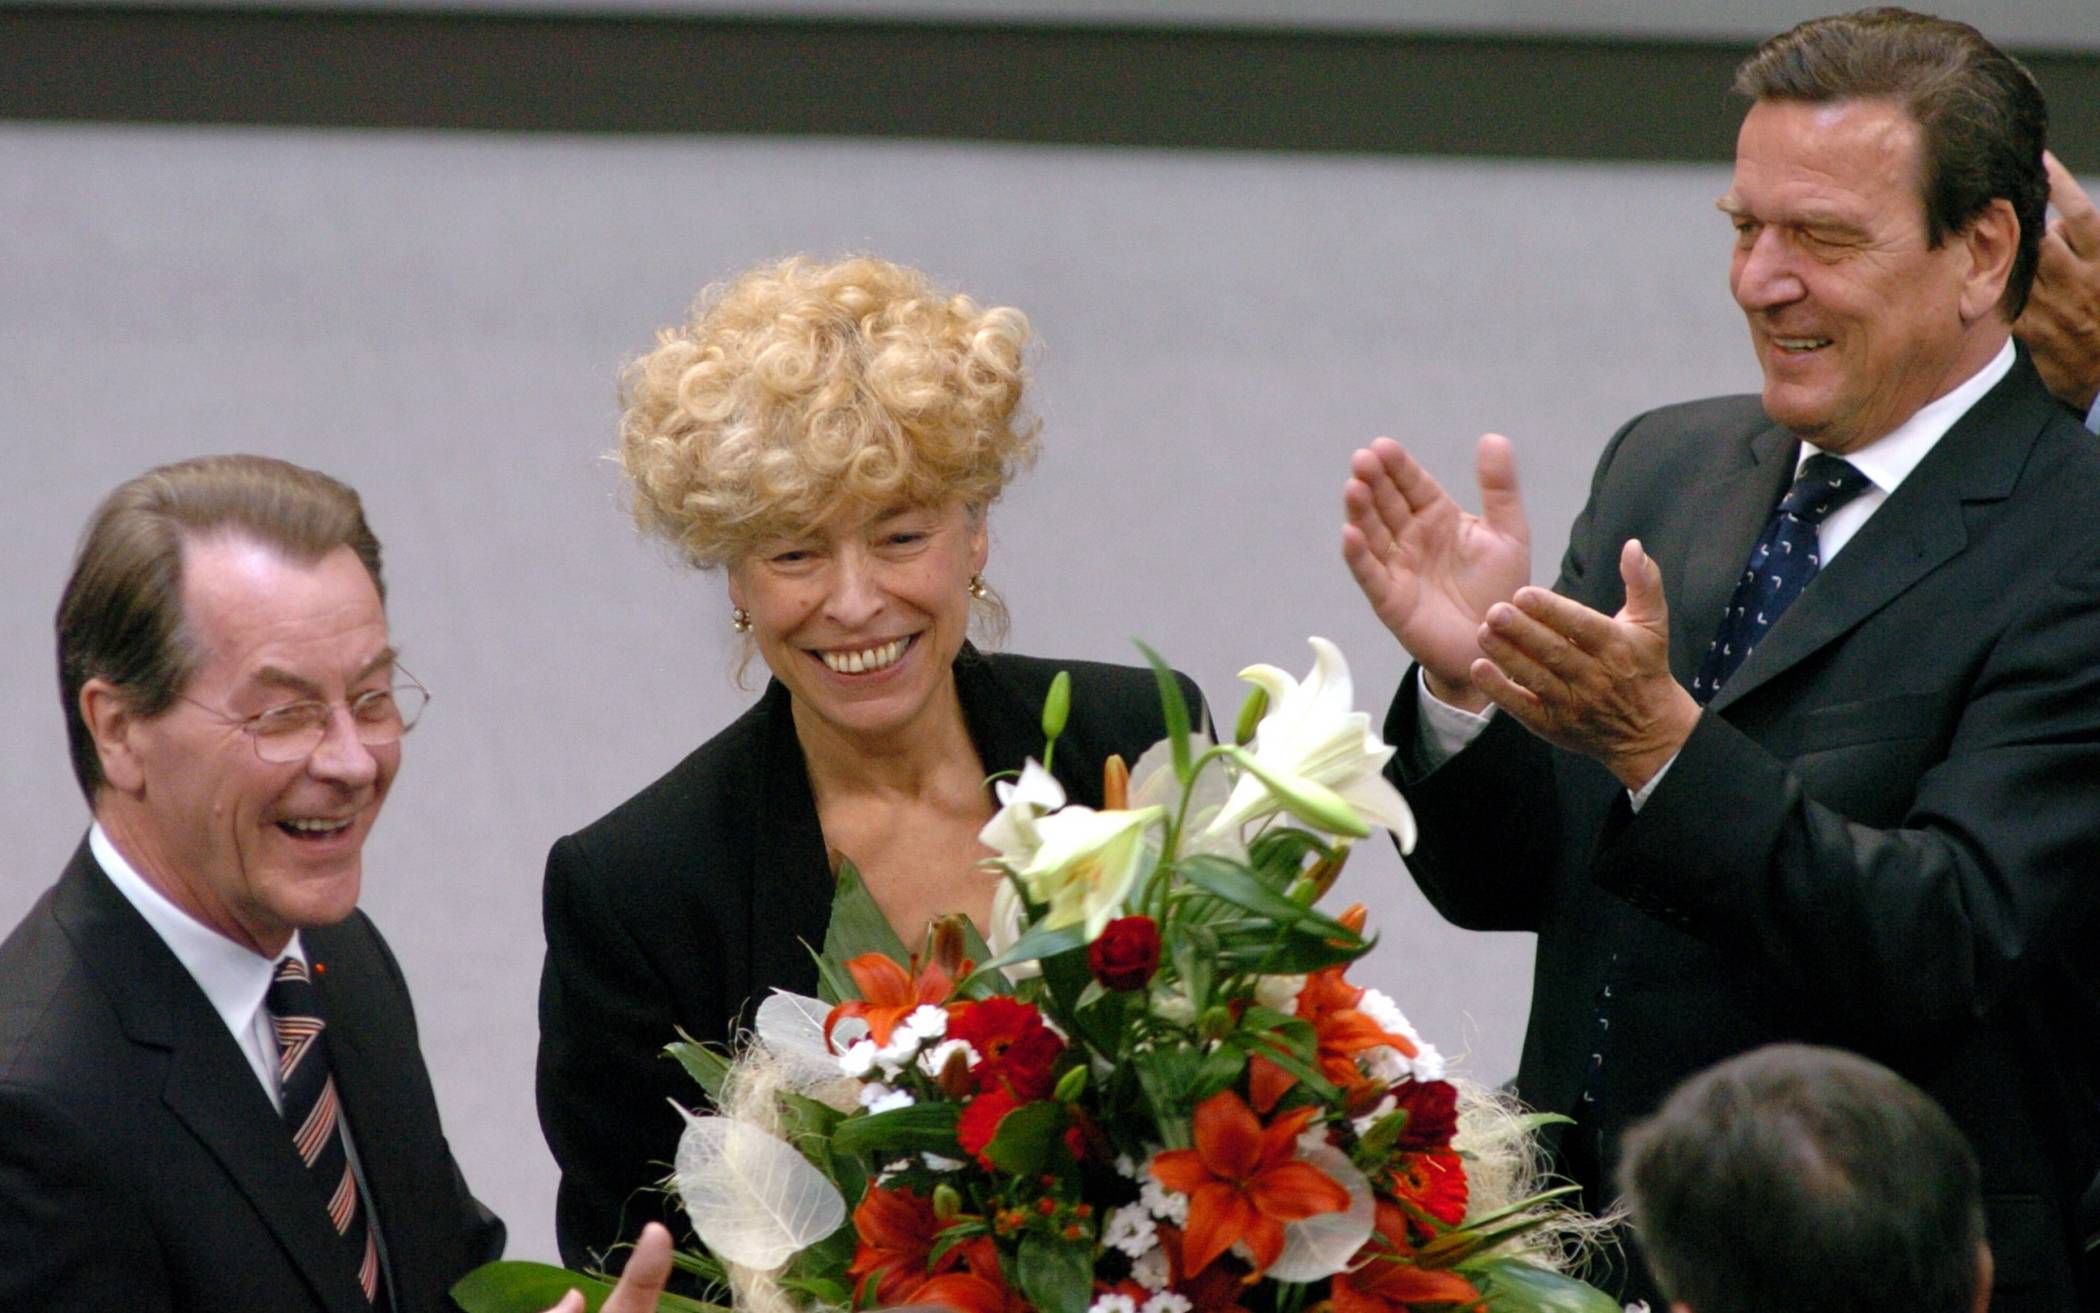  Bundesversammlung zur Wahl des Bundespräsidenten am 23. Mai 2004 im Reichstagsgebäude: Gesine Schwan mit Bundeskanzler Gerhard Schröder und dem SPD-Parteivorsitzenden Franz Müntefering. 